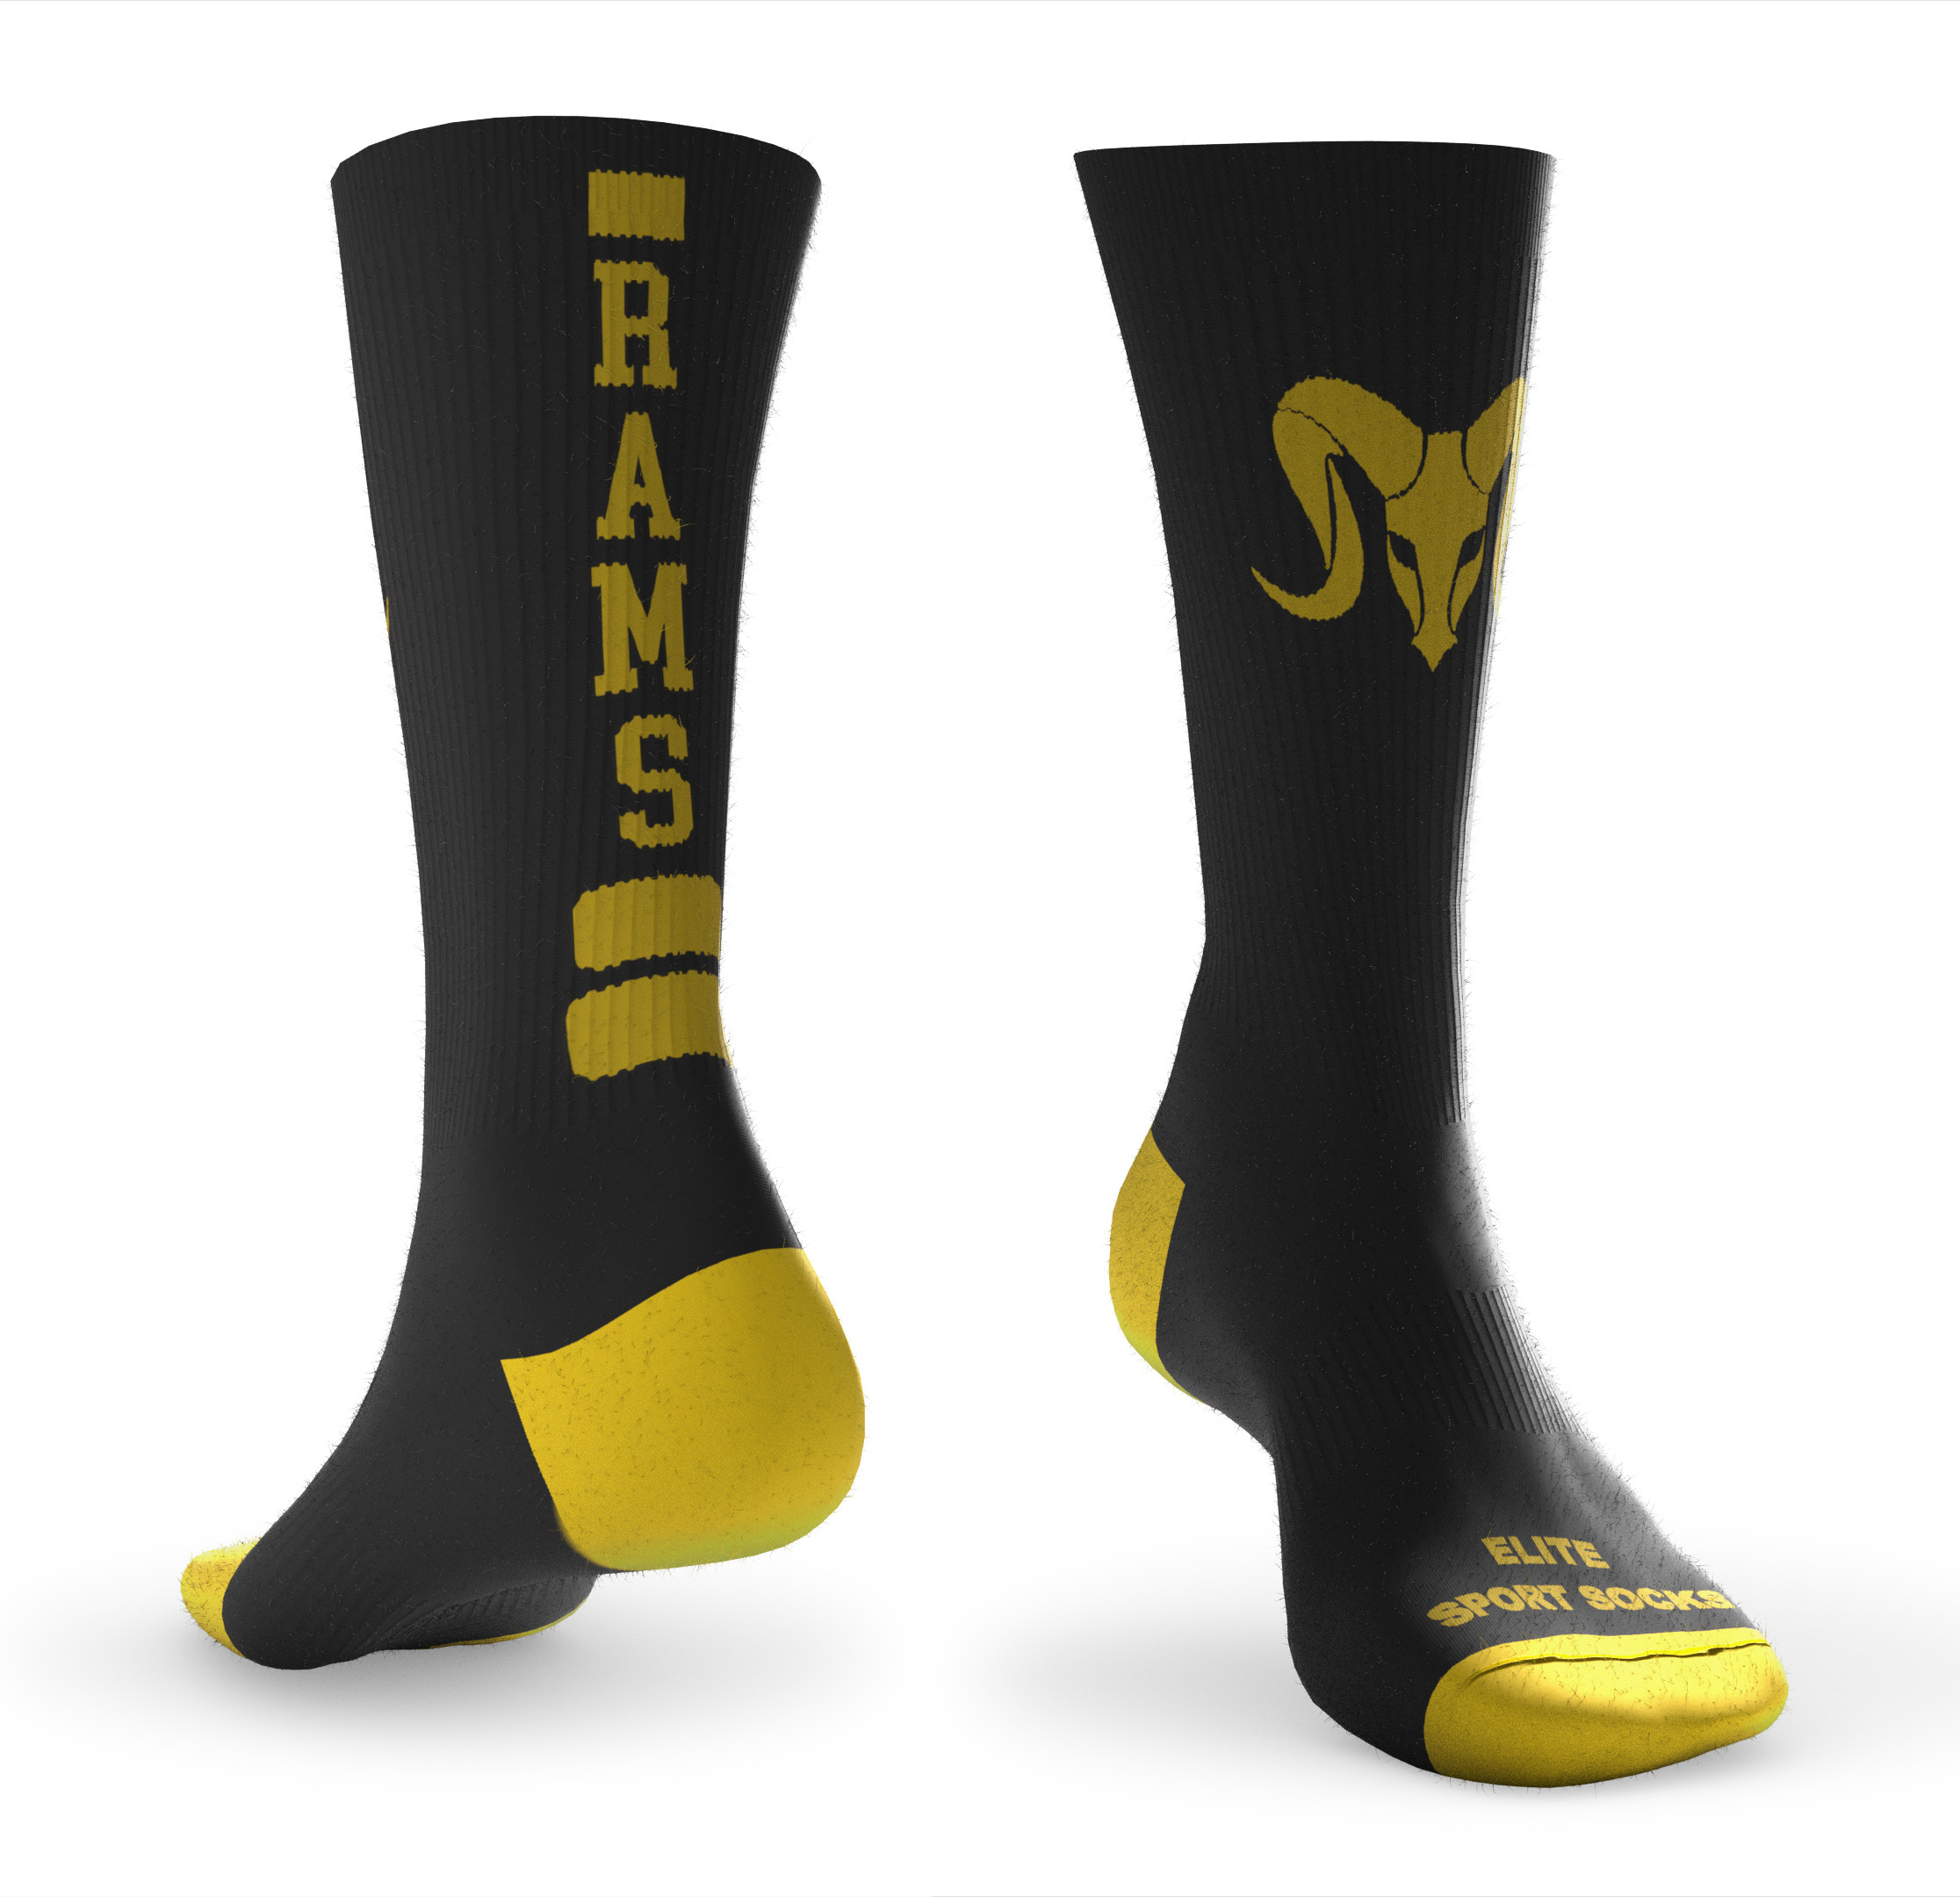 Design your own Custom Athletic Socks